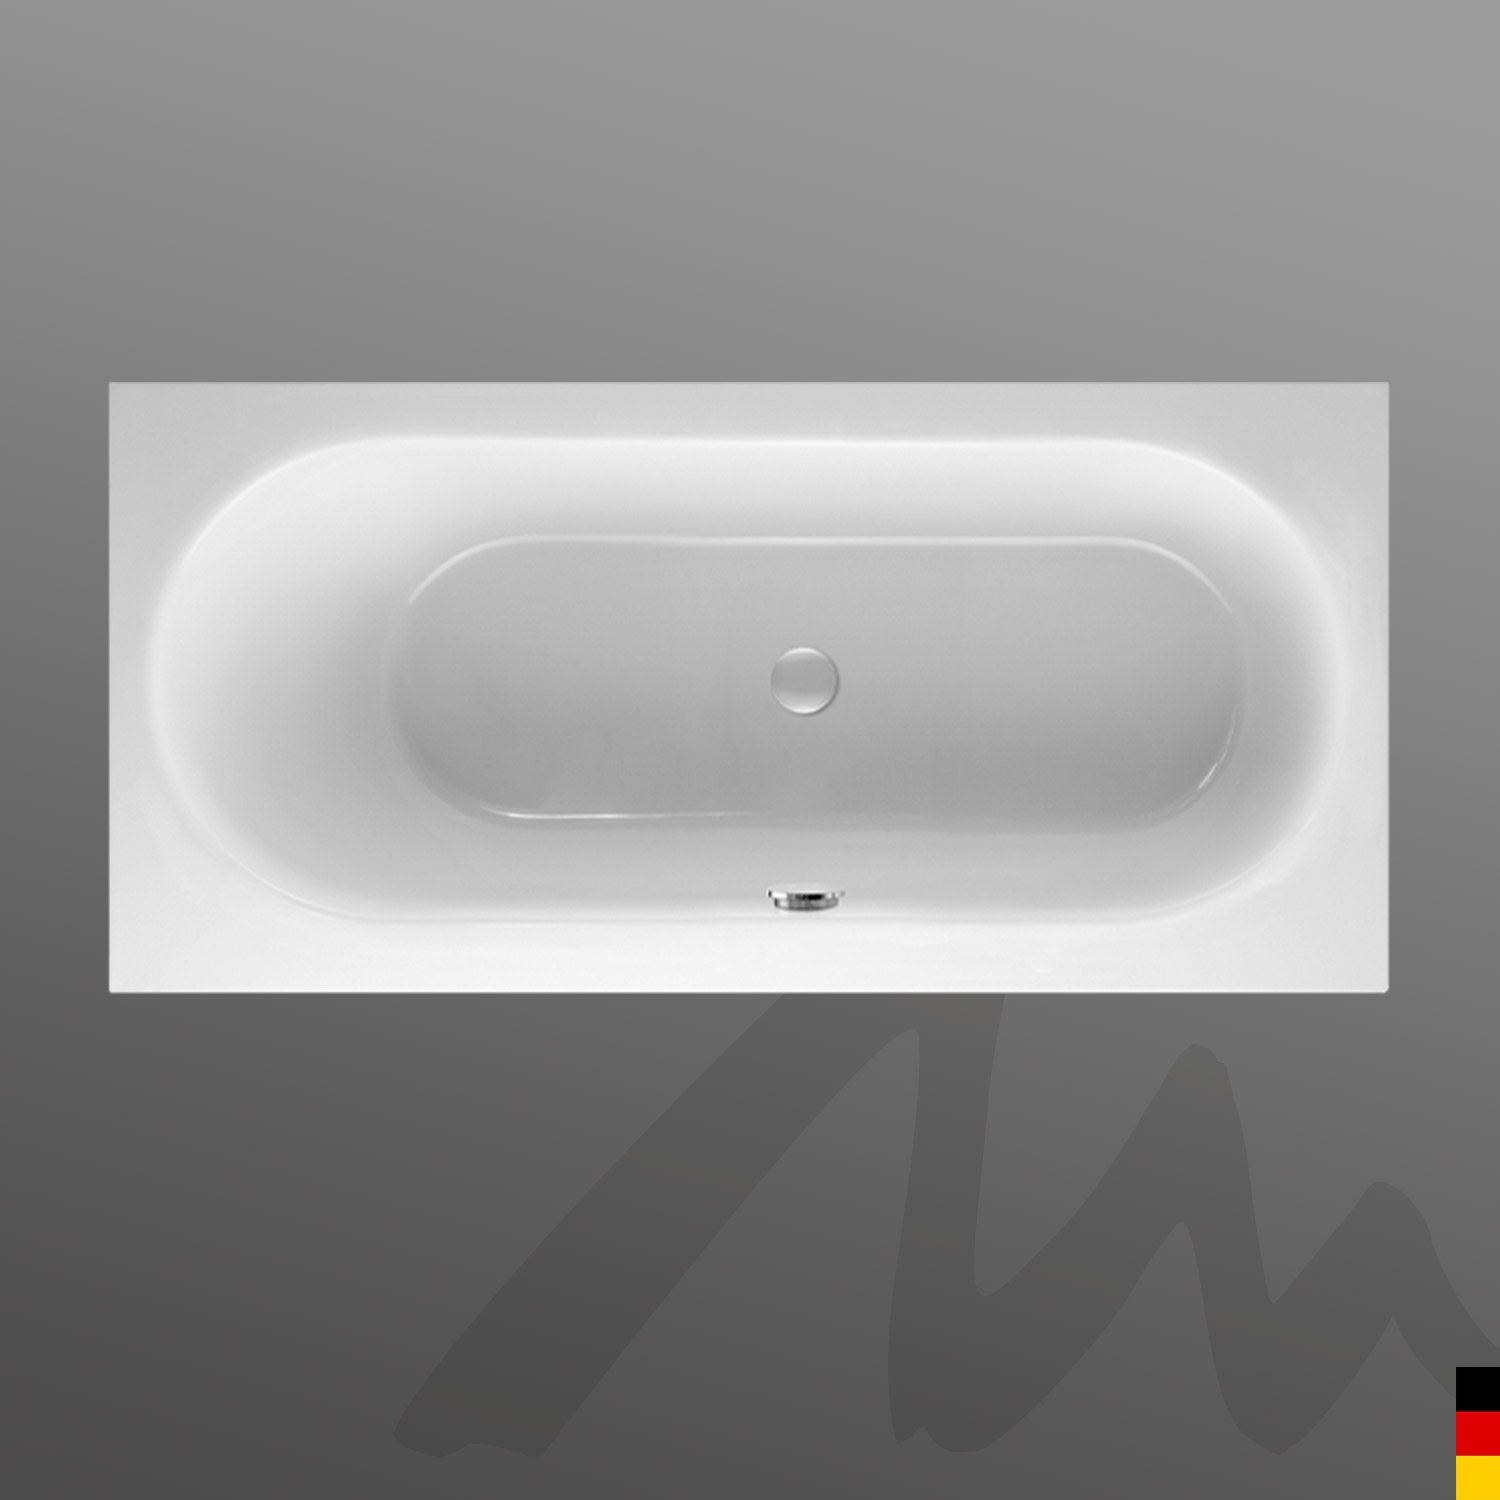 Mauersberger Badewanne Rechteck Ausana 170/75 uno  170x75x44cm  Farbe:weiß